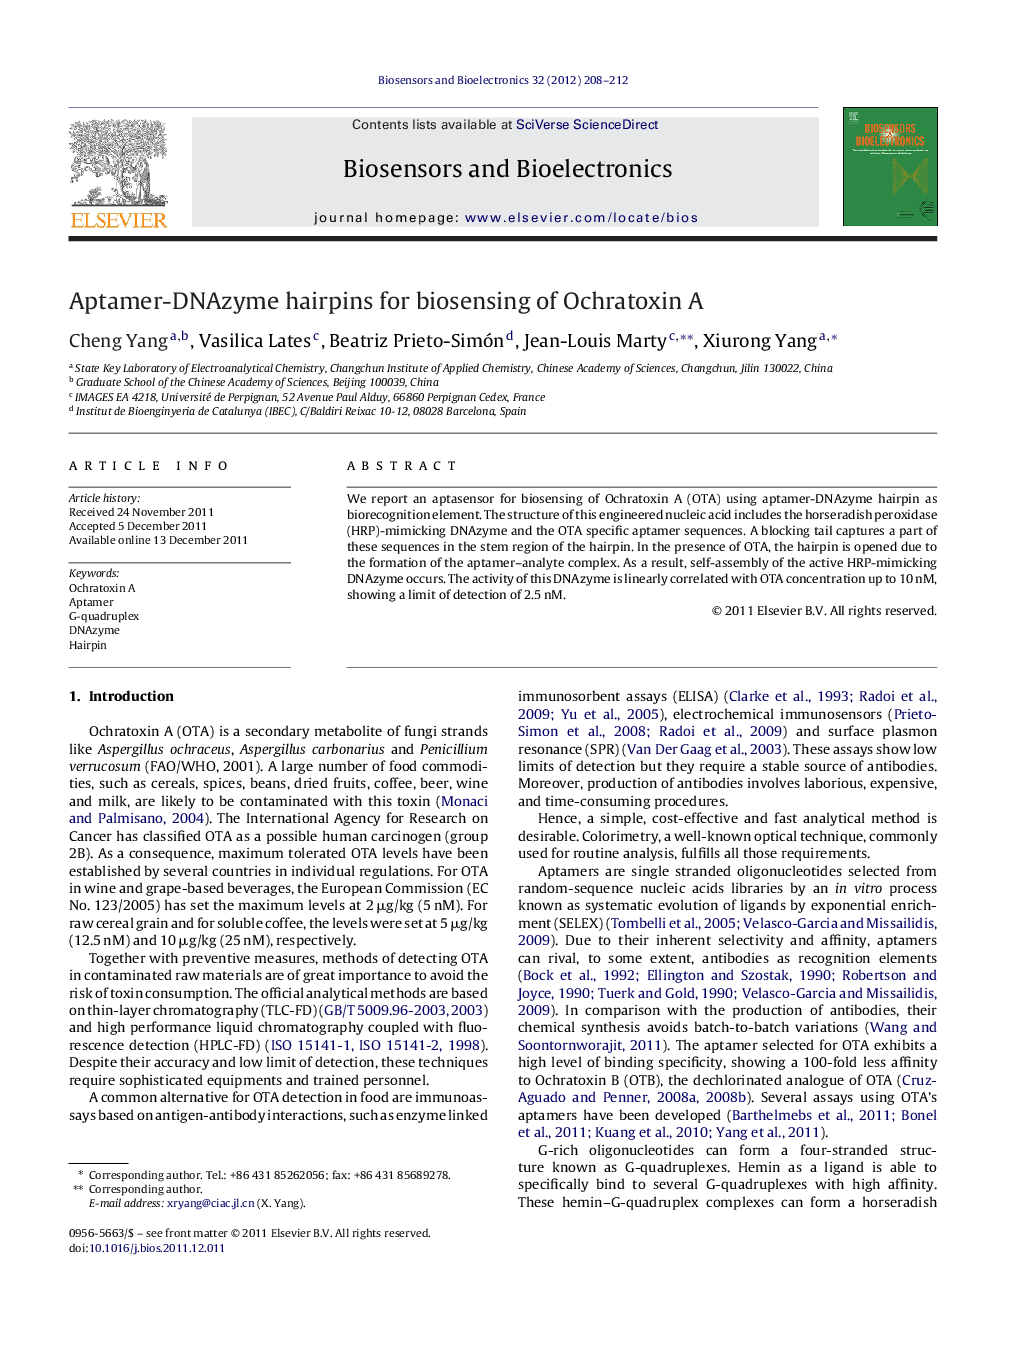 Aptamer-DNAzyme hairpins for biosensing of Ochratoxin A